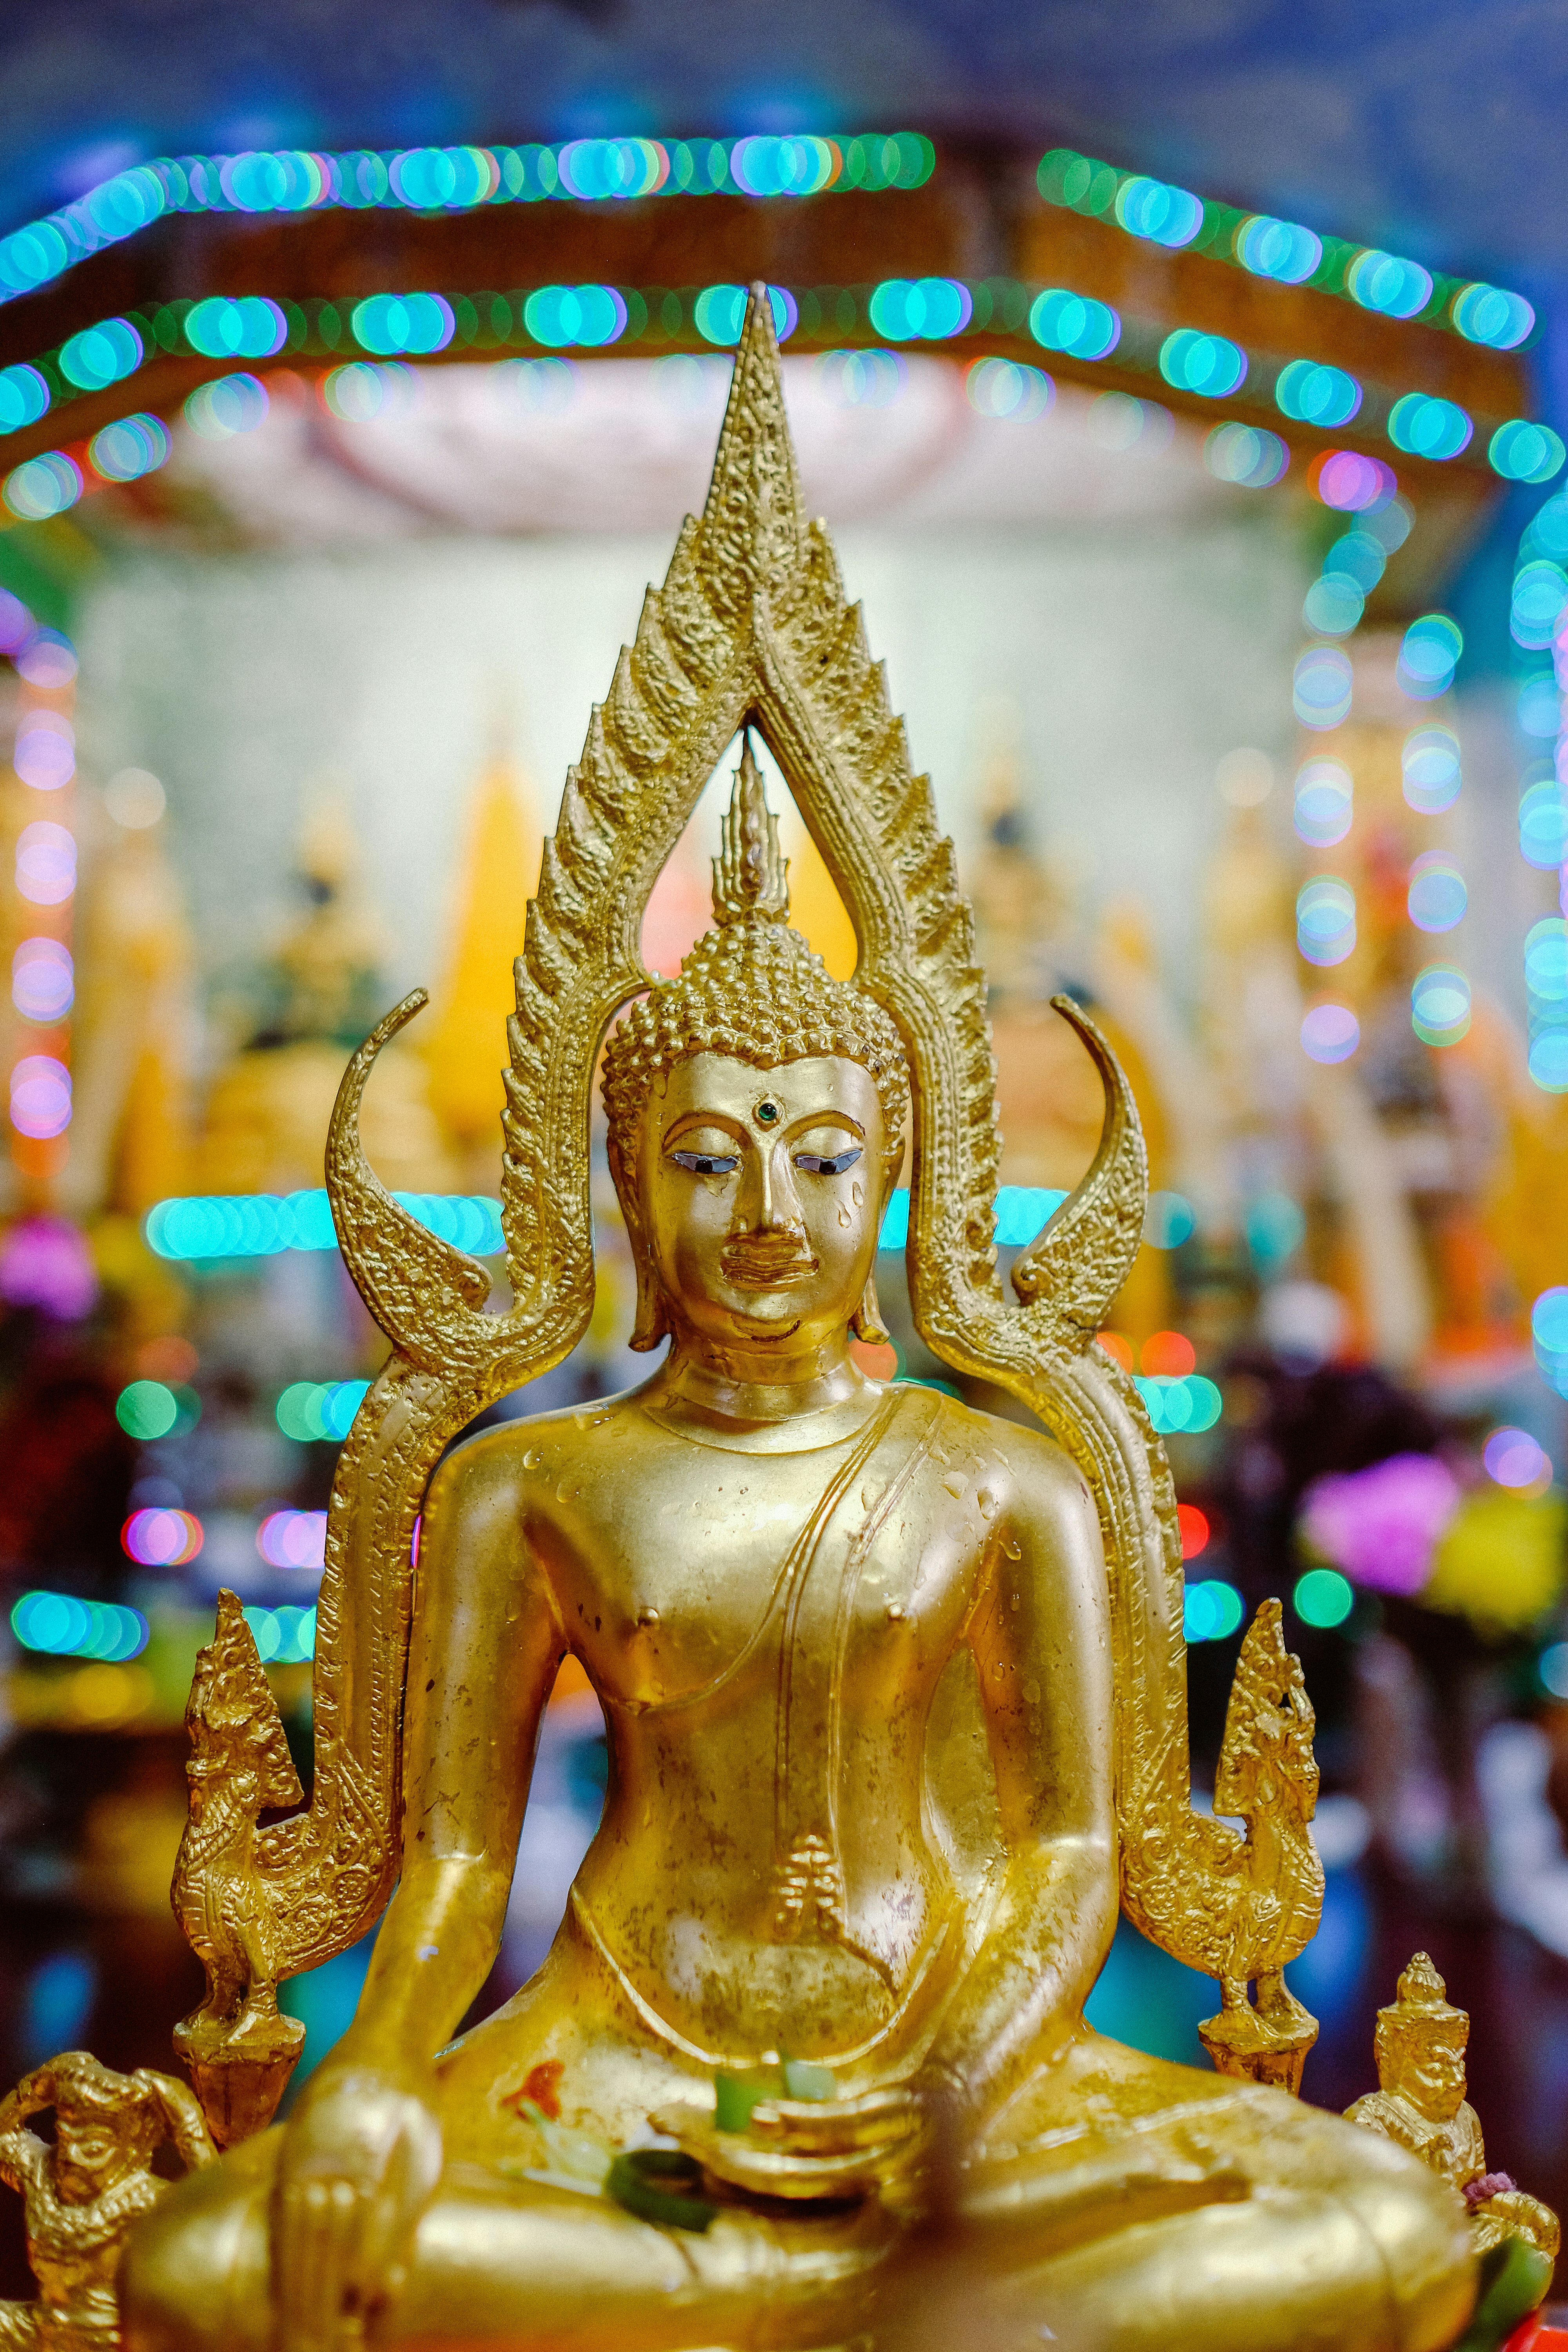 gold buddha figurine in tilt shift lens